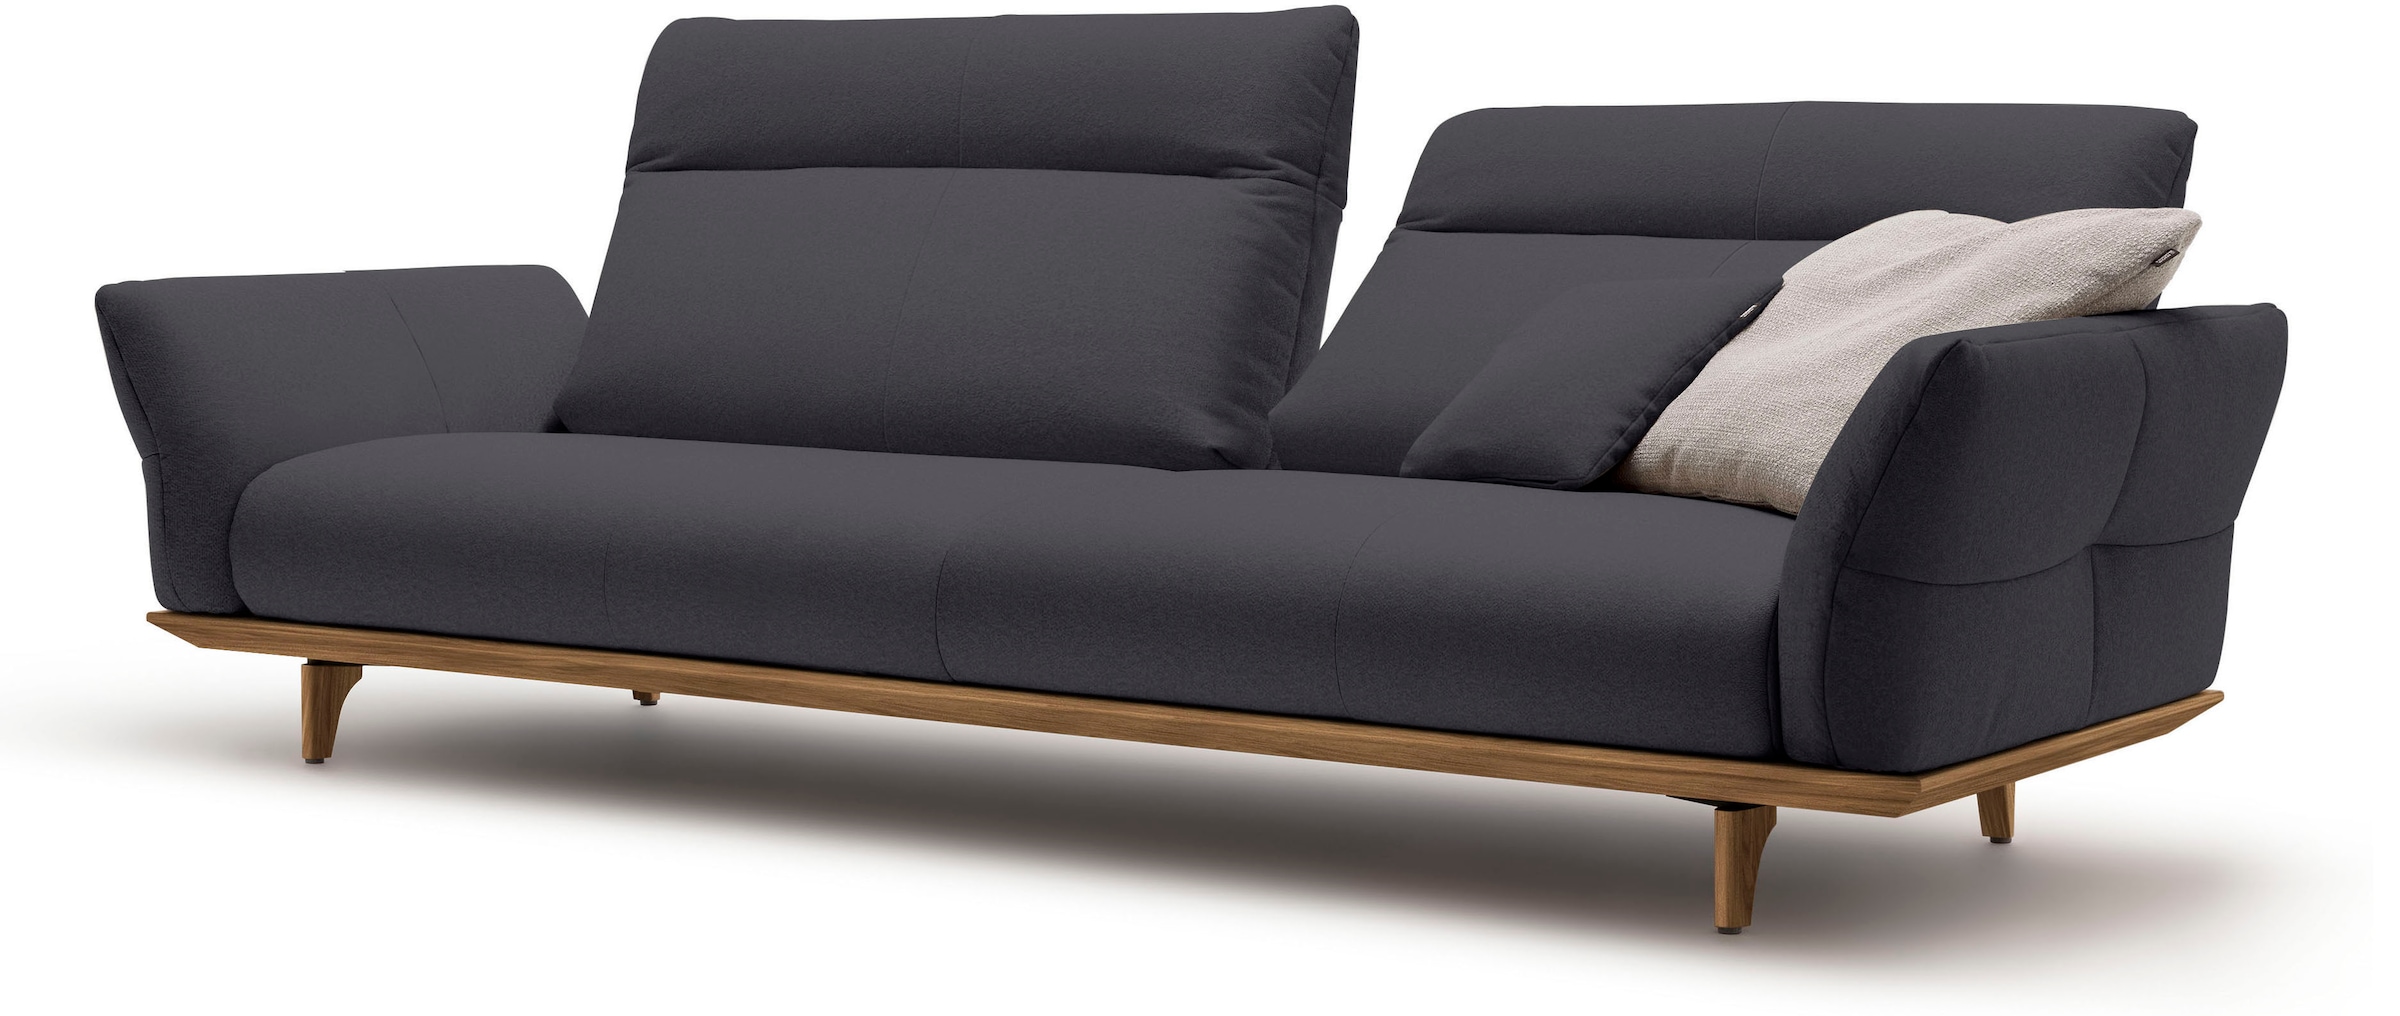 hülsta sofa 4-Sitzer »hs.460«, Sockel in Nussbaum, Füße Nussbaum, Breite 248 cm